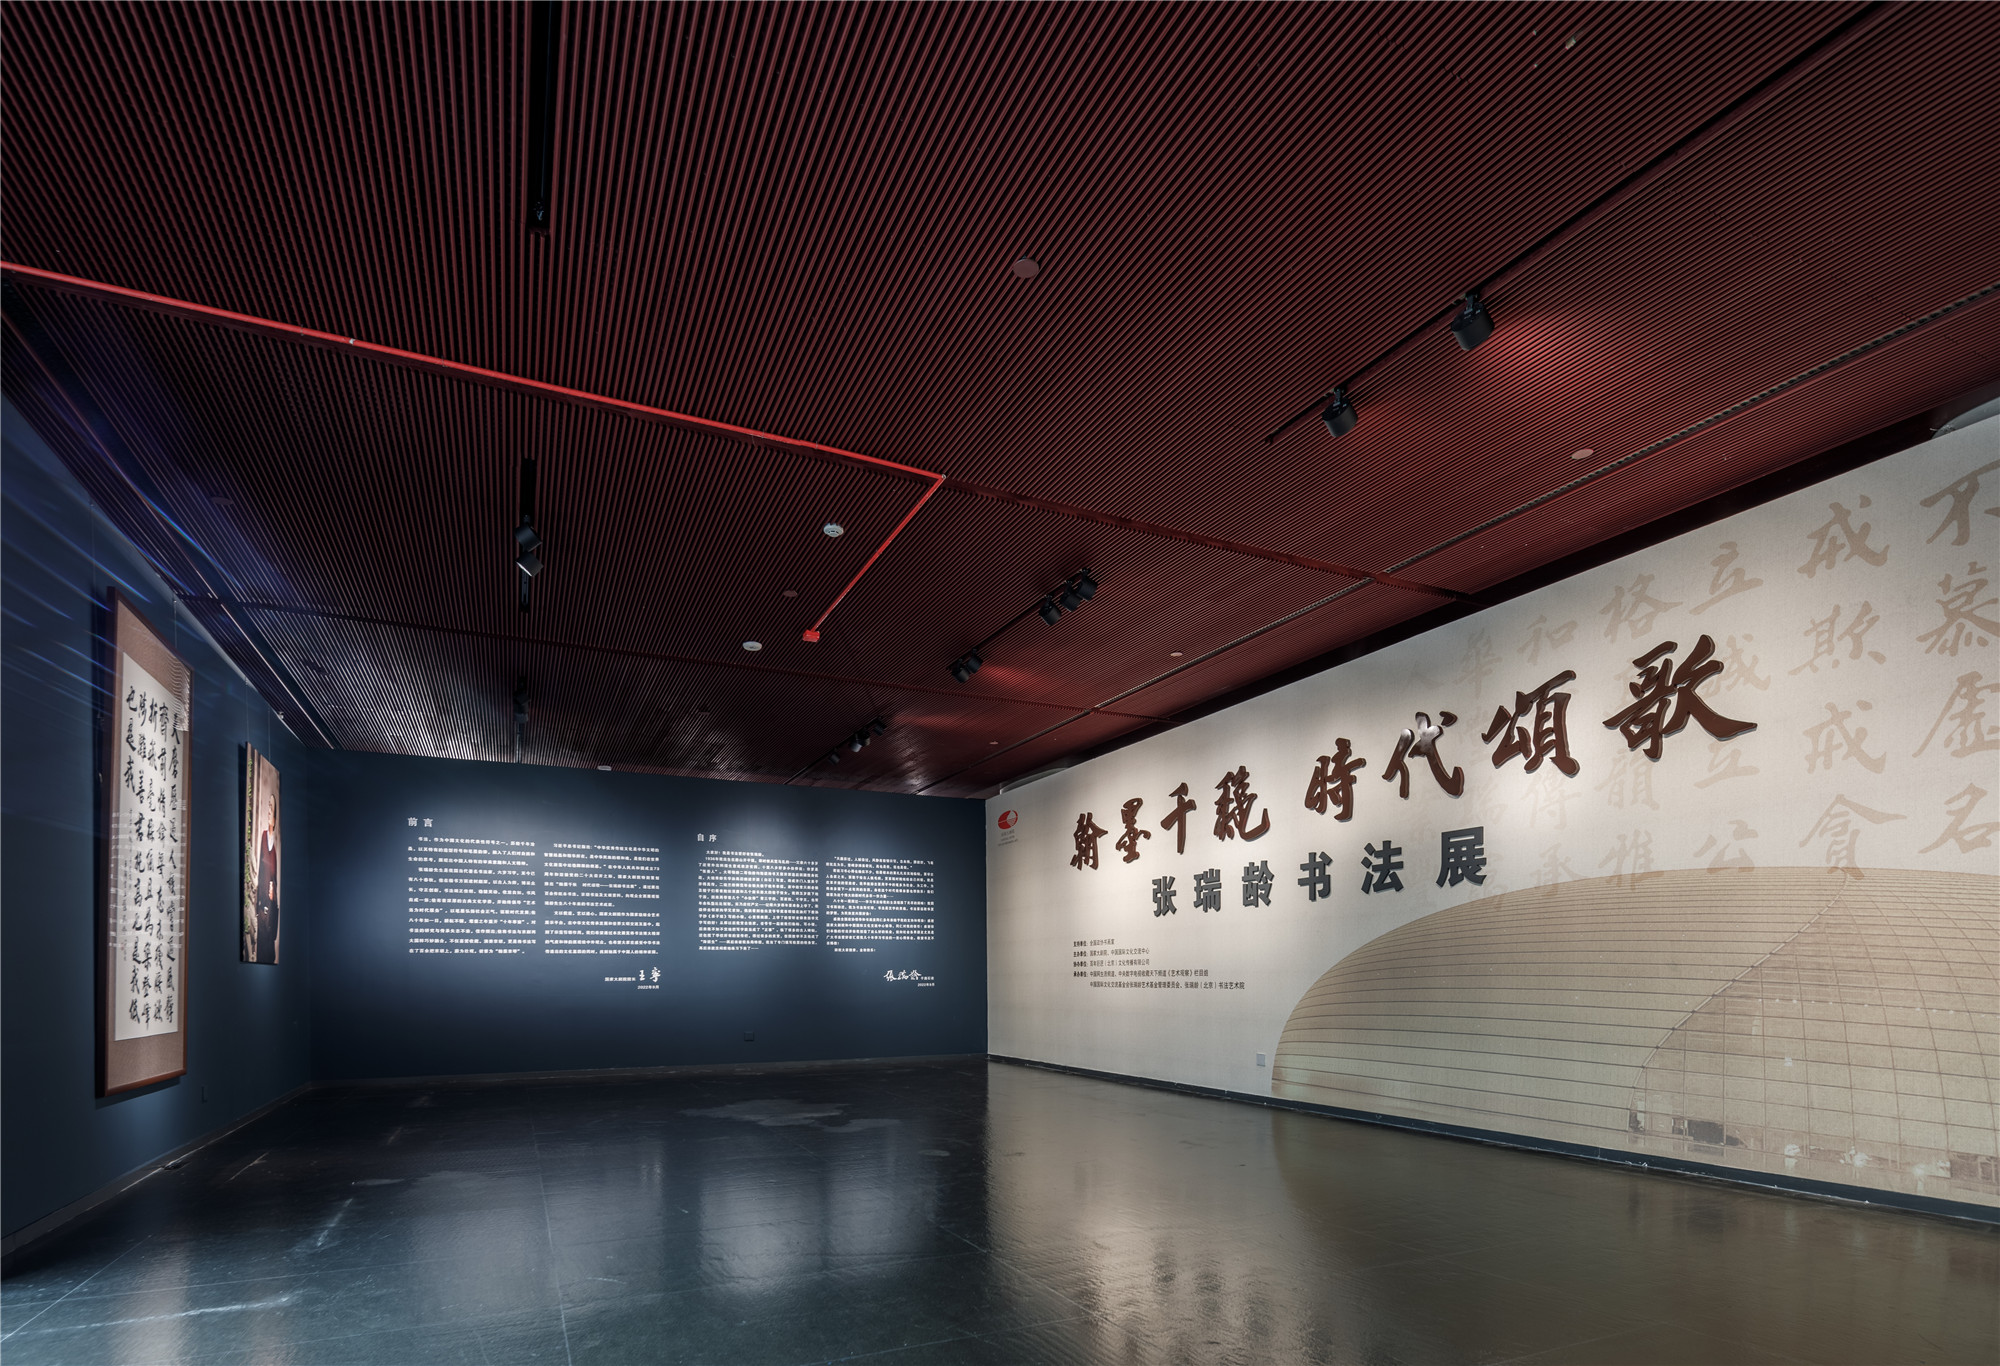 迎國慶 國家大劇院特別推出 “翰墨韆鞦 時代頌歌——張瑞齡書法展”